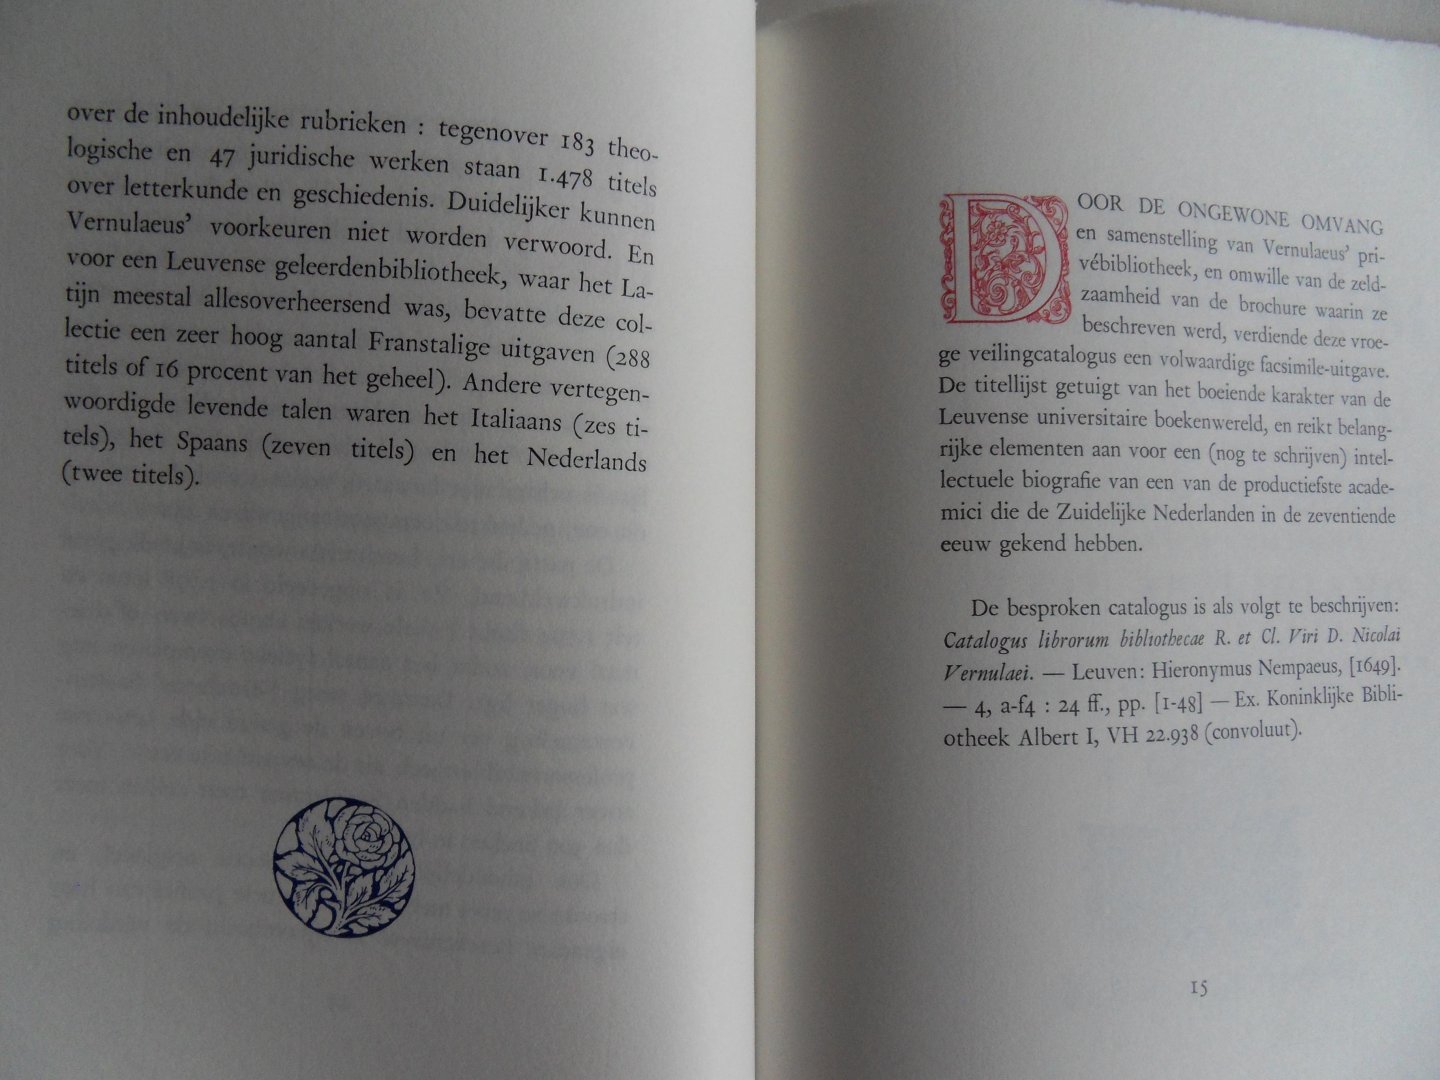 Delsaerdt, Pierre. [ ingeleid door ]. [ GESIGNEERD door Pierre Delsaerdt ]. - De bibliotheek van Nicolaus Vernulaeus. - Een facsimile van de boekveilingcatalogus uit 1649. [ Genummerd exemplaar 40 / 70 = van de Arabisch genummerde exemplaren ].